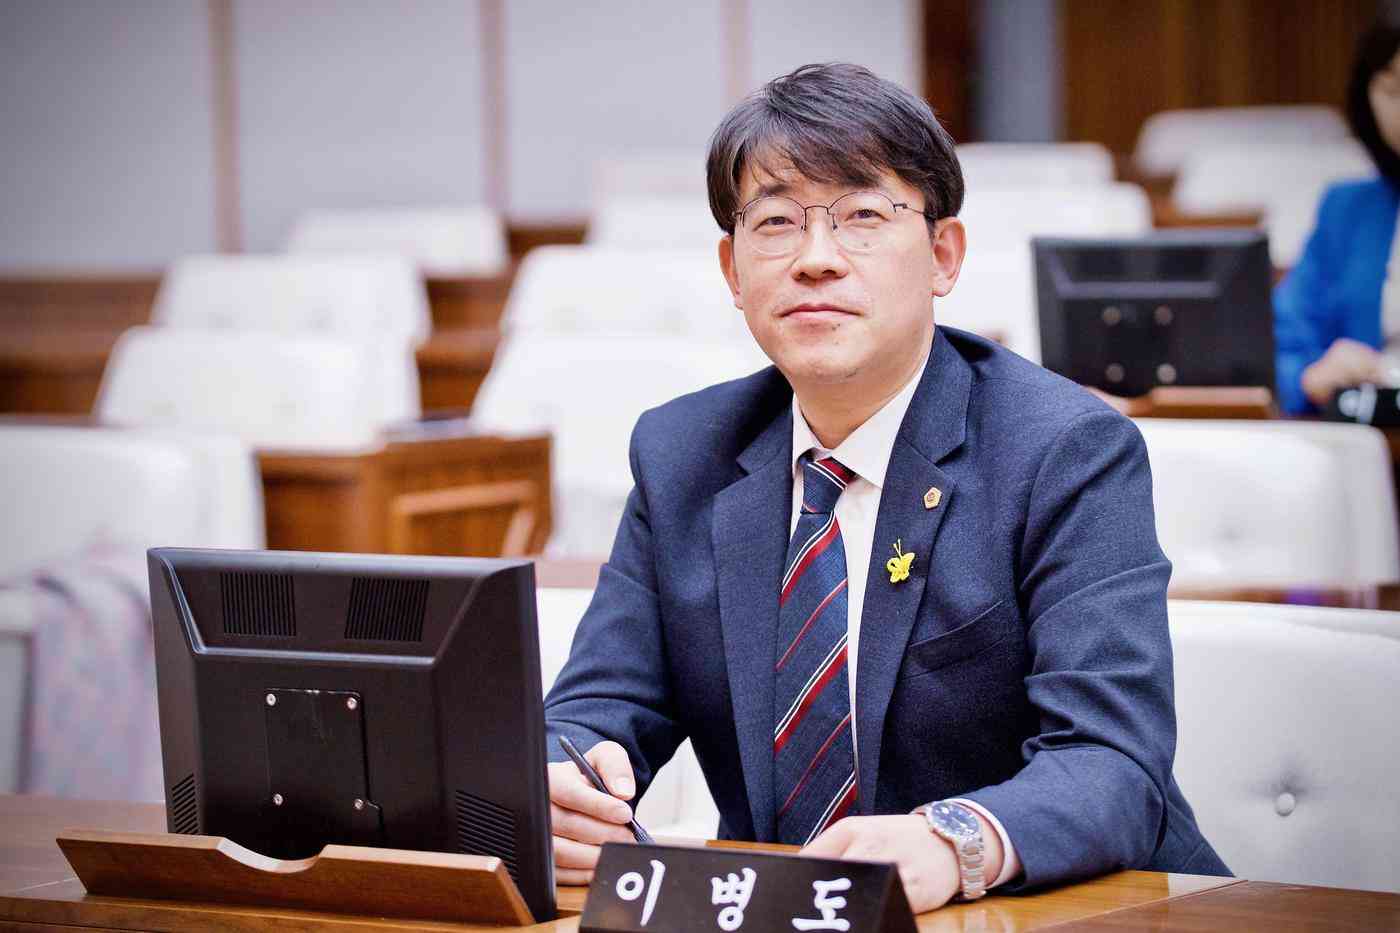 서울시의회는 20일 예산결산특별회 위원장으로 이병도 더불어민주당 의원(은평2)을 선출했다고 밝혔다. (서울시의회 제공)